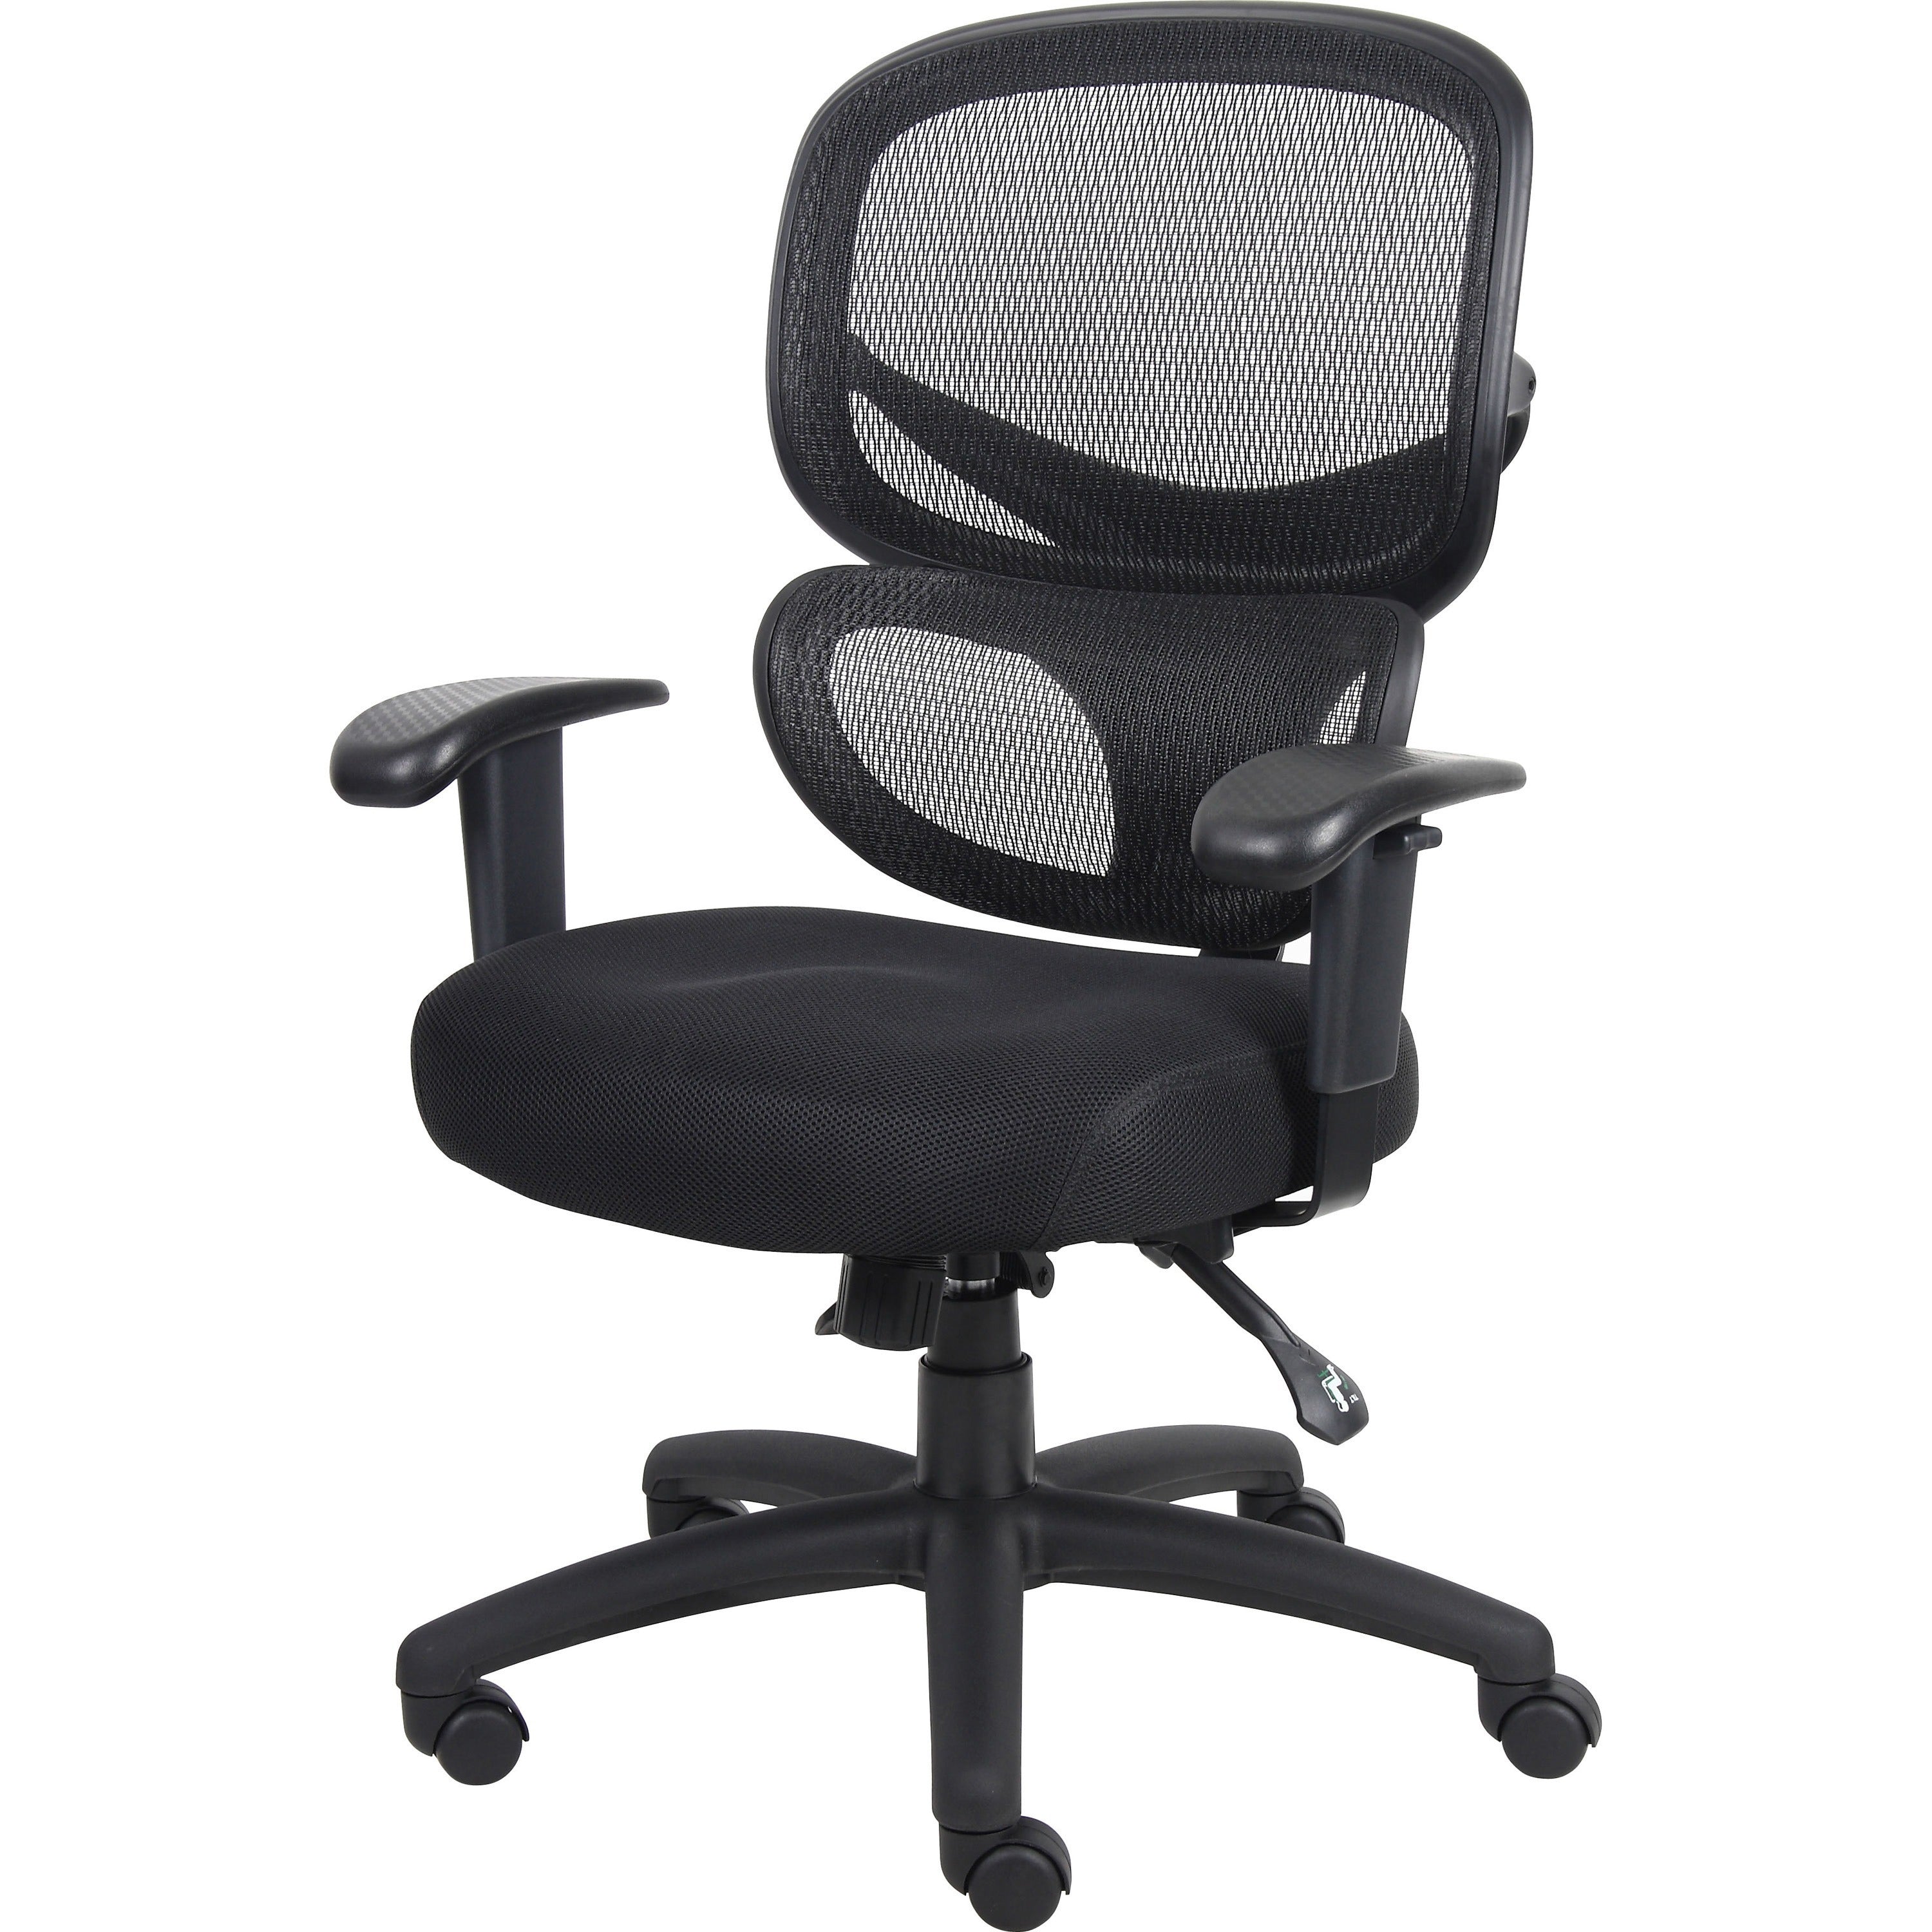 Lorell Mesh-Back Executive Chair - Black Fabric Seat - Black Mesh Back - 5-star Base - Black, Silver - Fabric - 1 Each - 